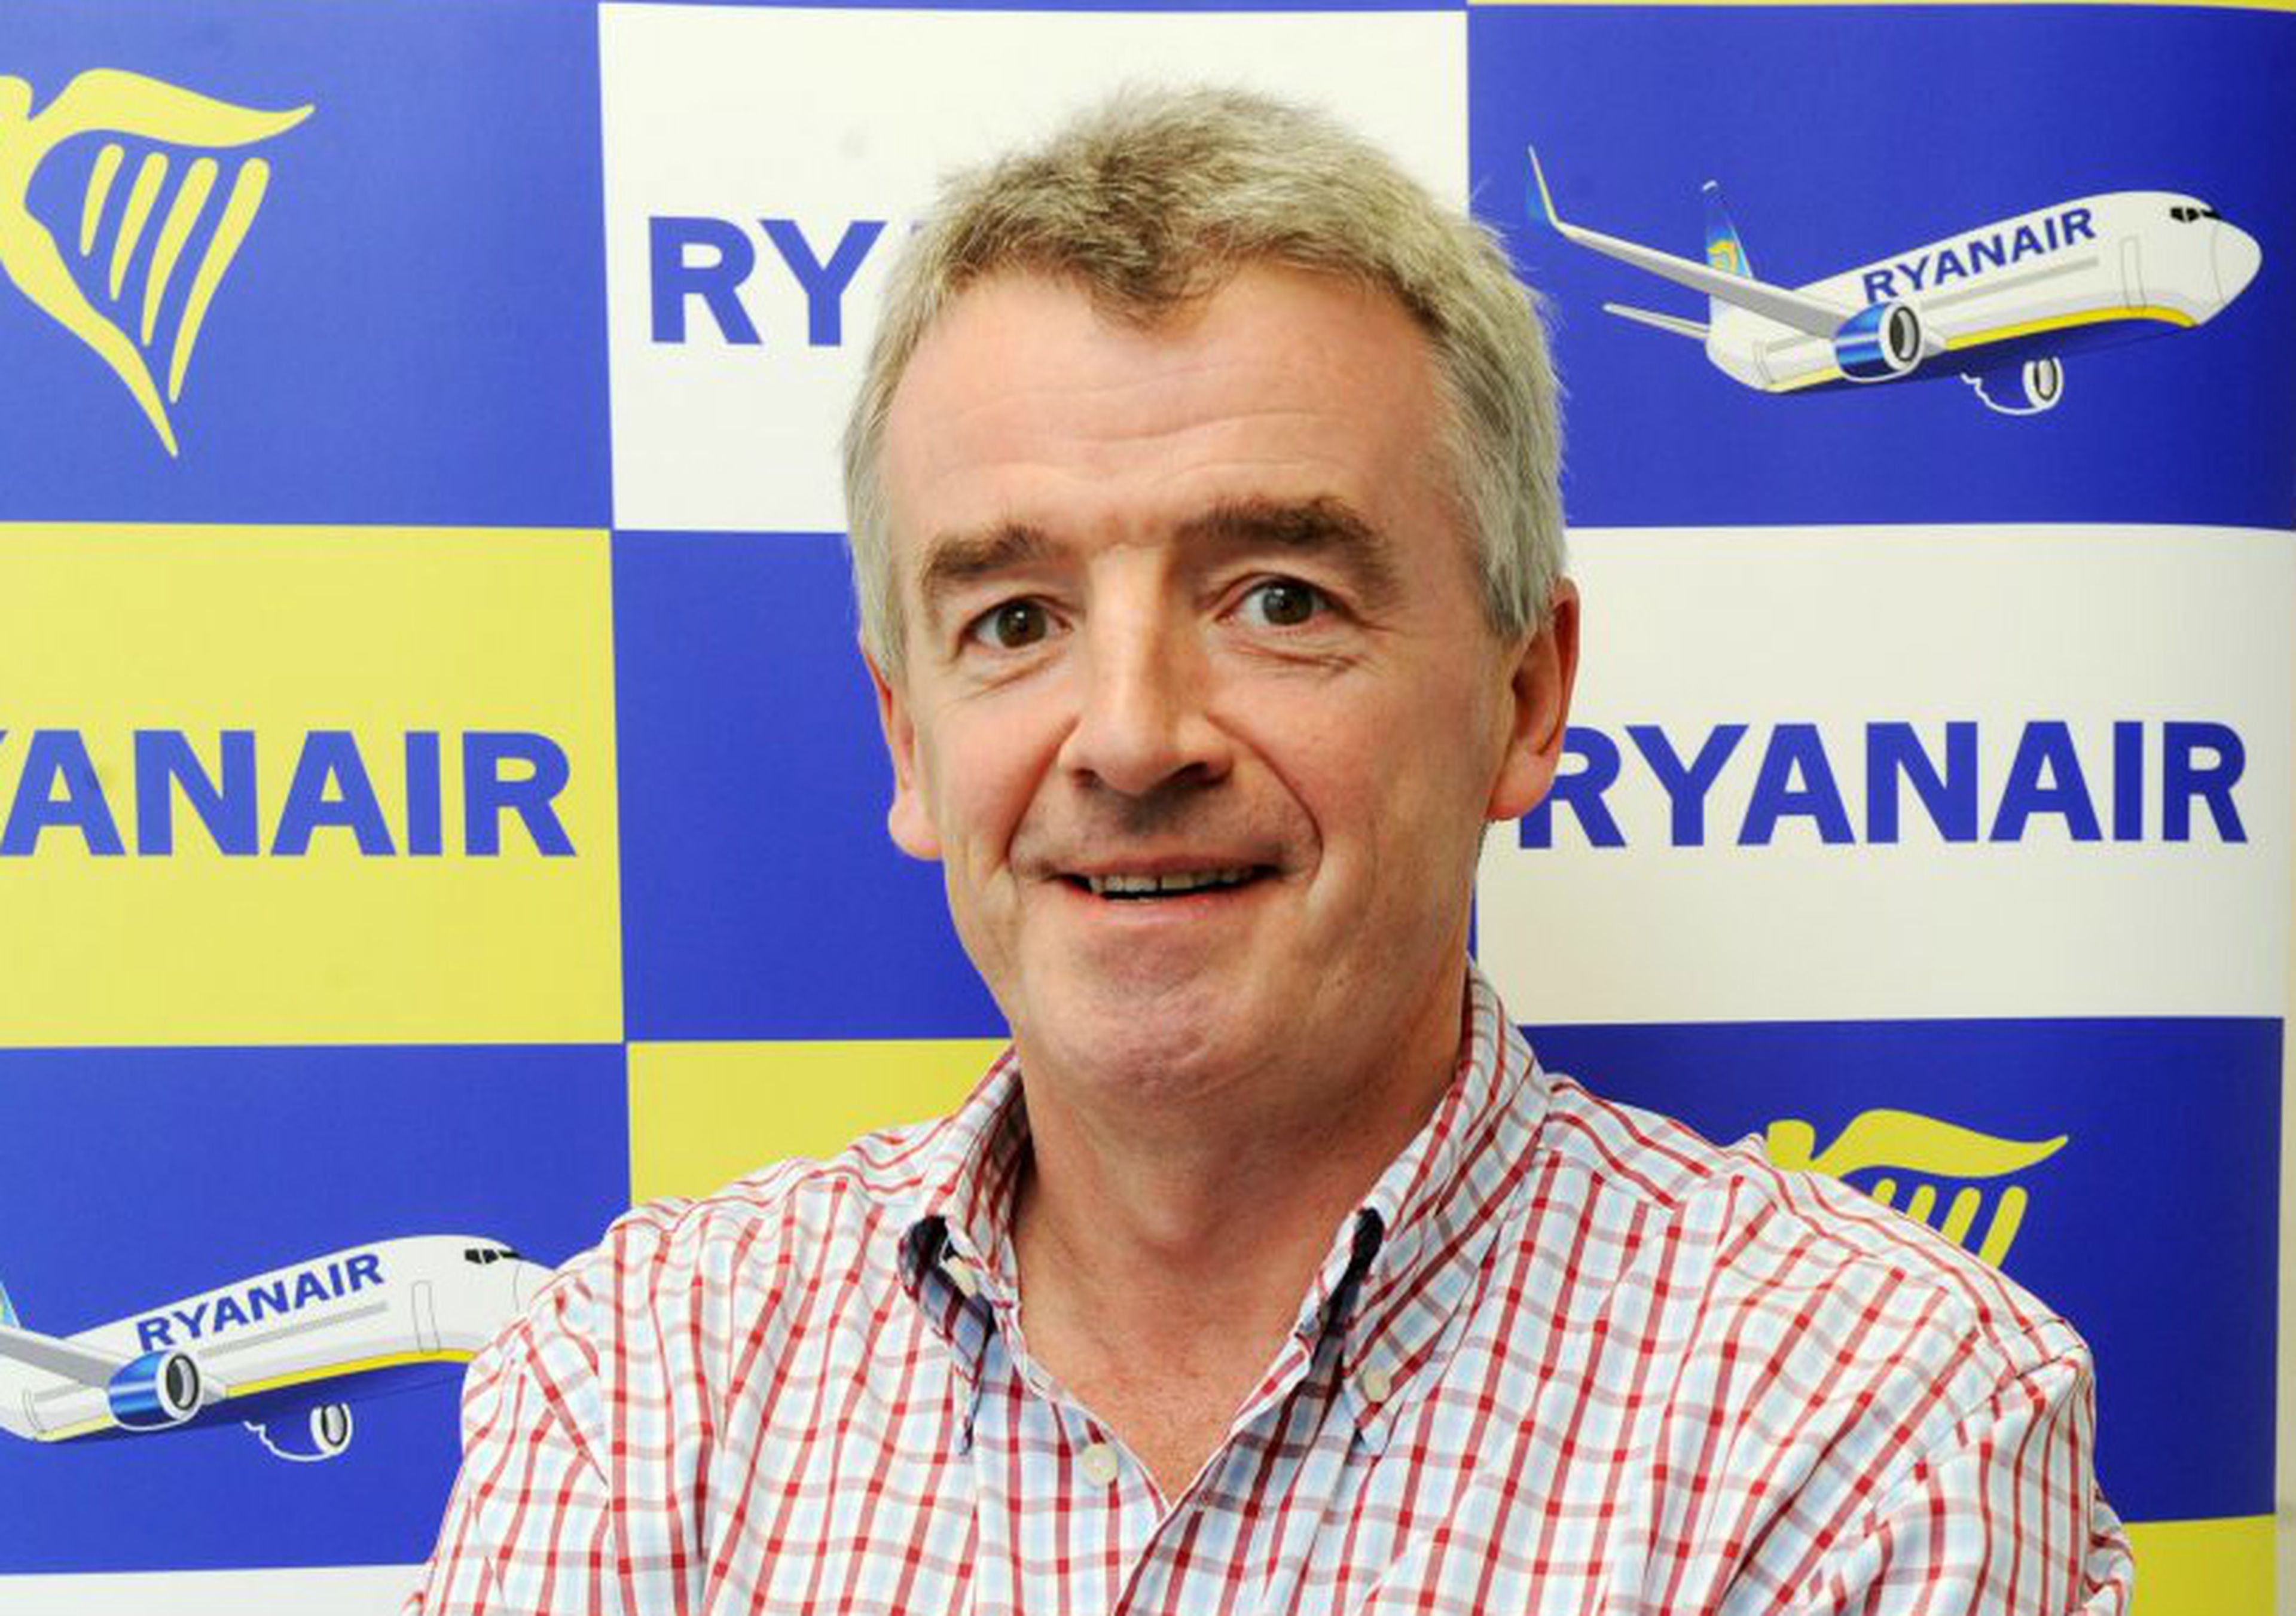 El consejero delegado de Ryanair, Michael O'Leary.